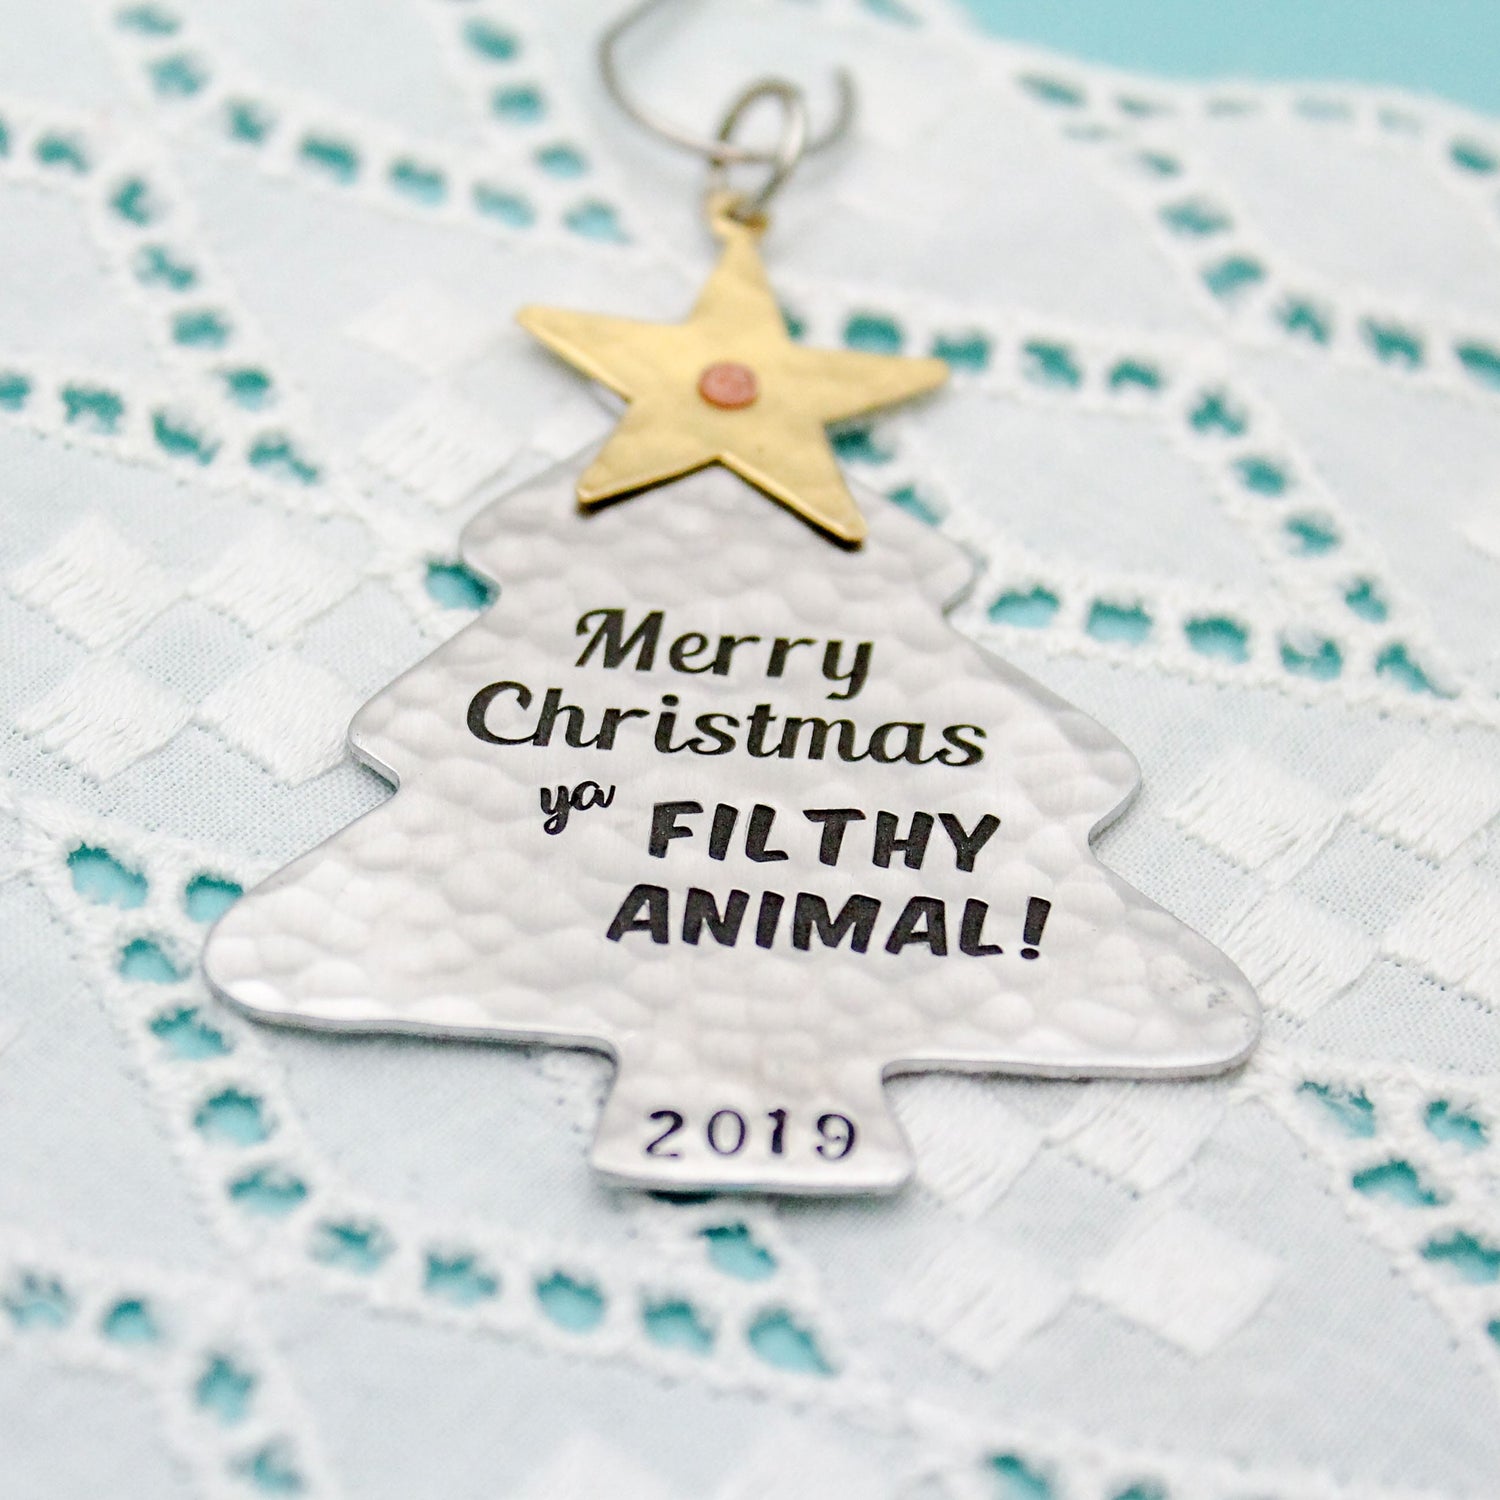 Merry Christmas Ya Filthy Animal Ornament, Home Alone Ornament, Christmas Tree Ornament in Aluminum, Unique Christmas Tree Ornament Gift